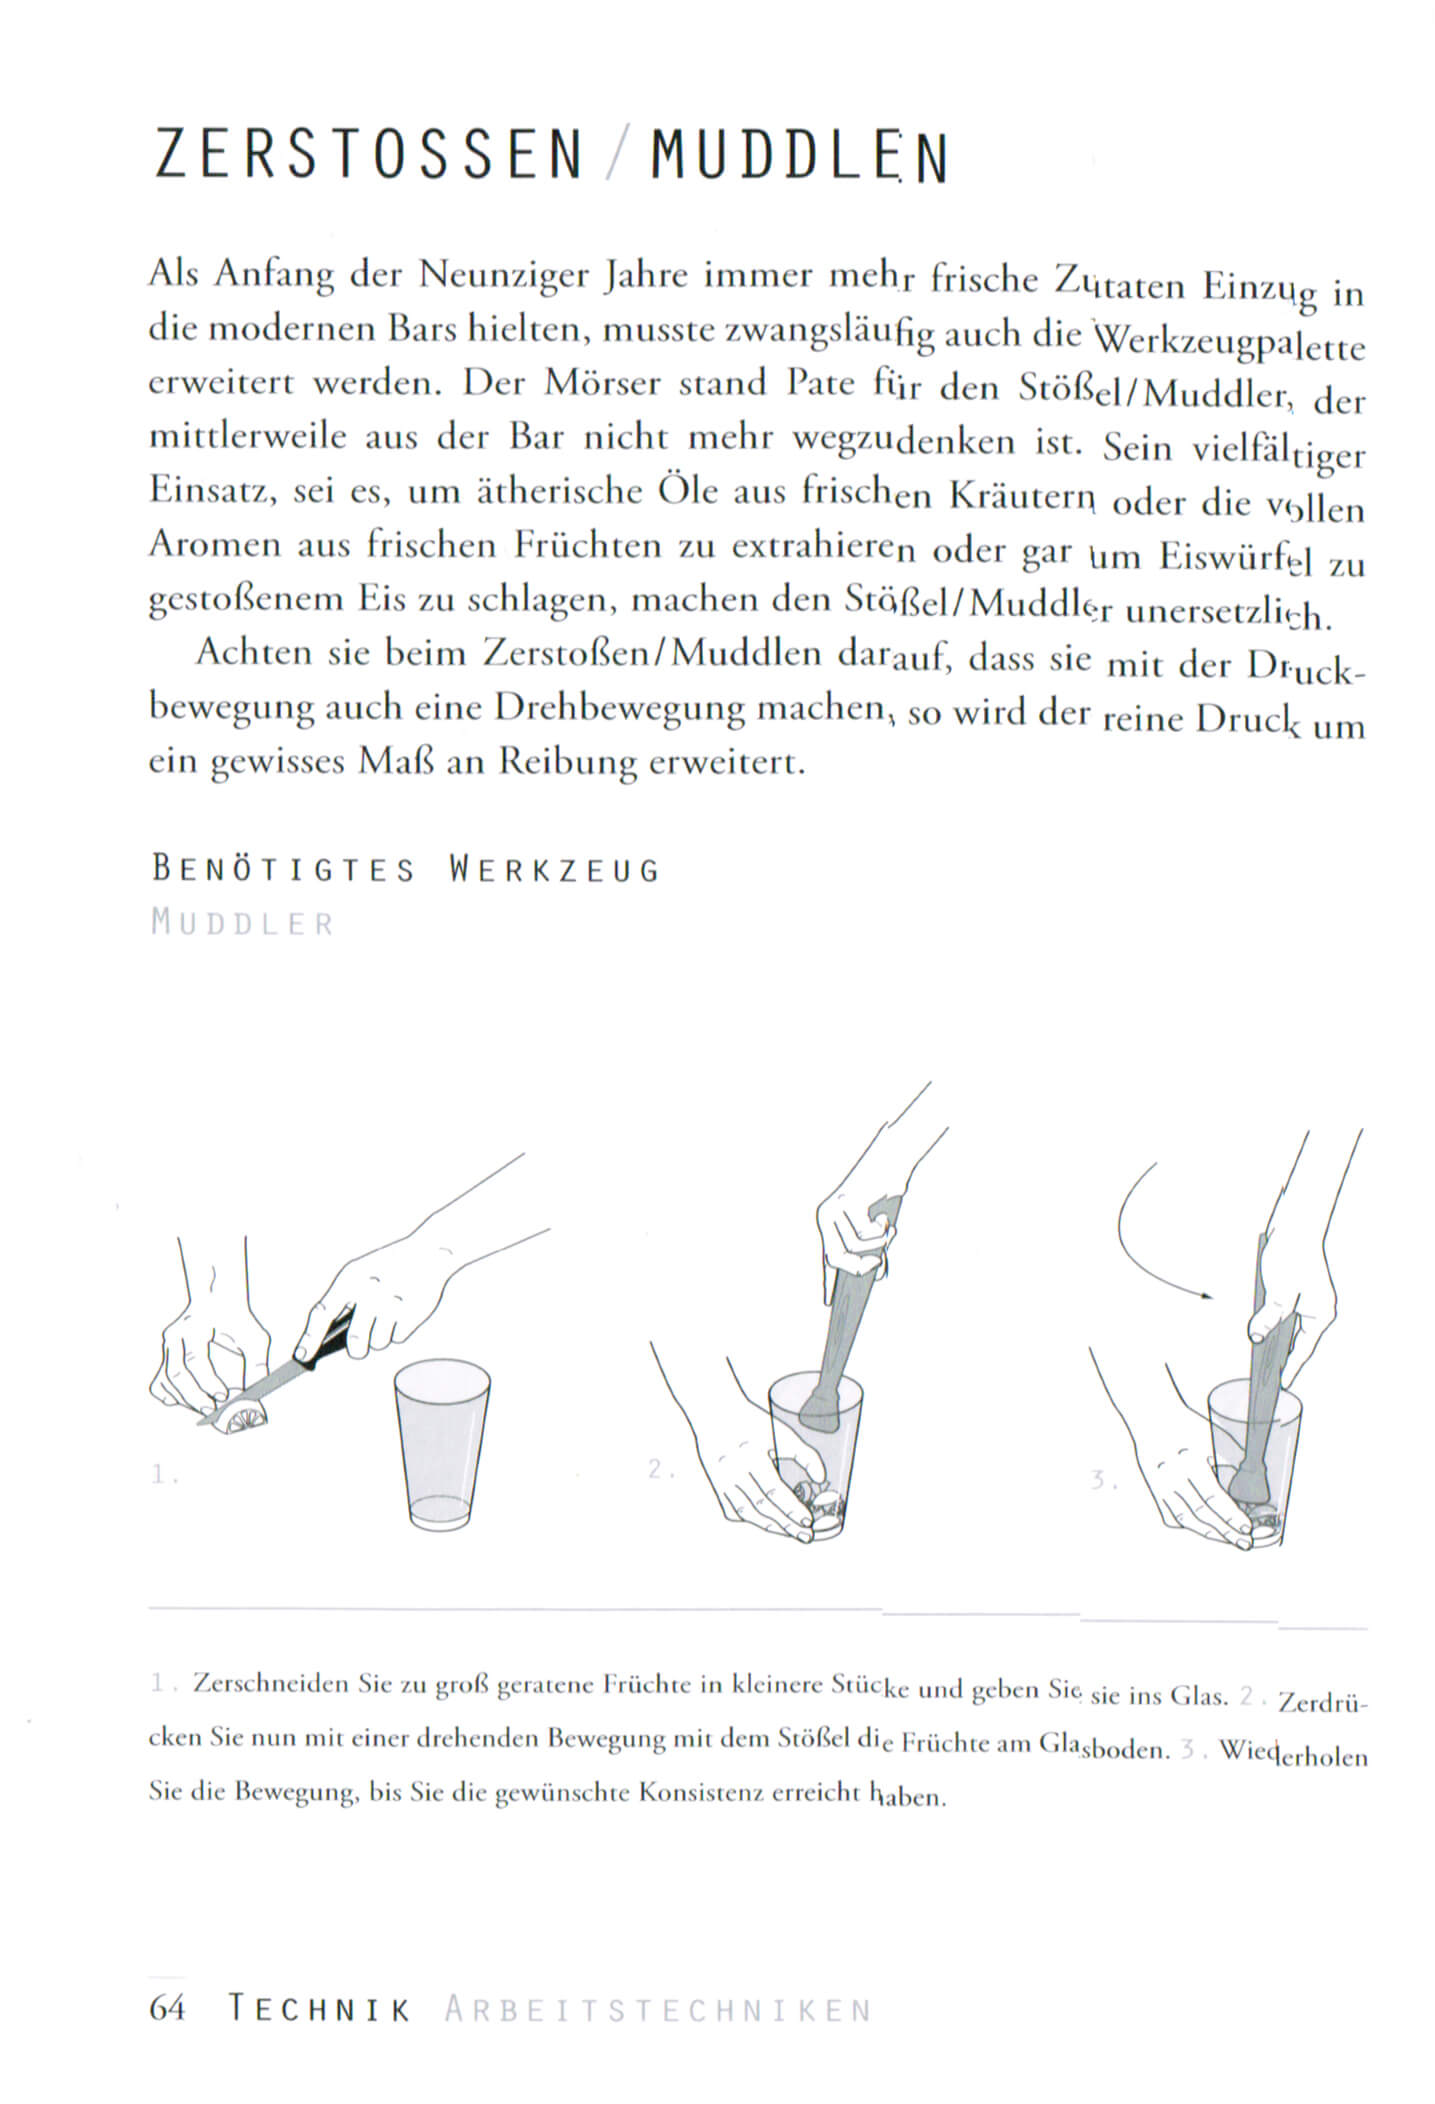 Cocktailian - Das Handbuch der Bar 1